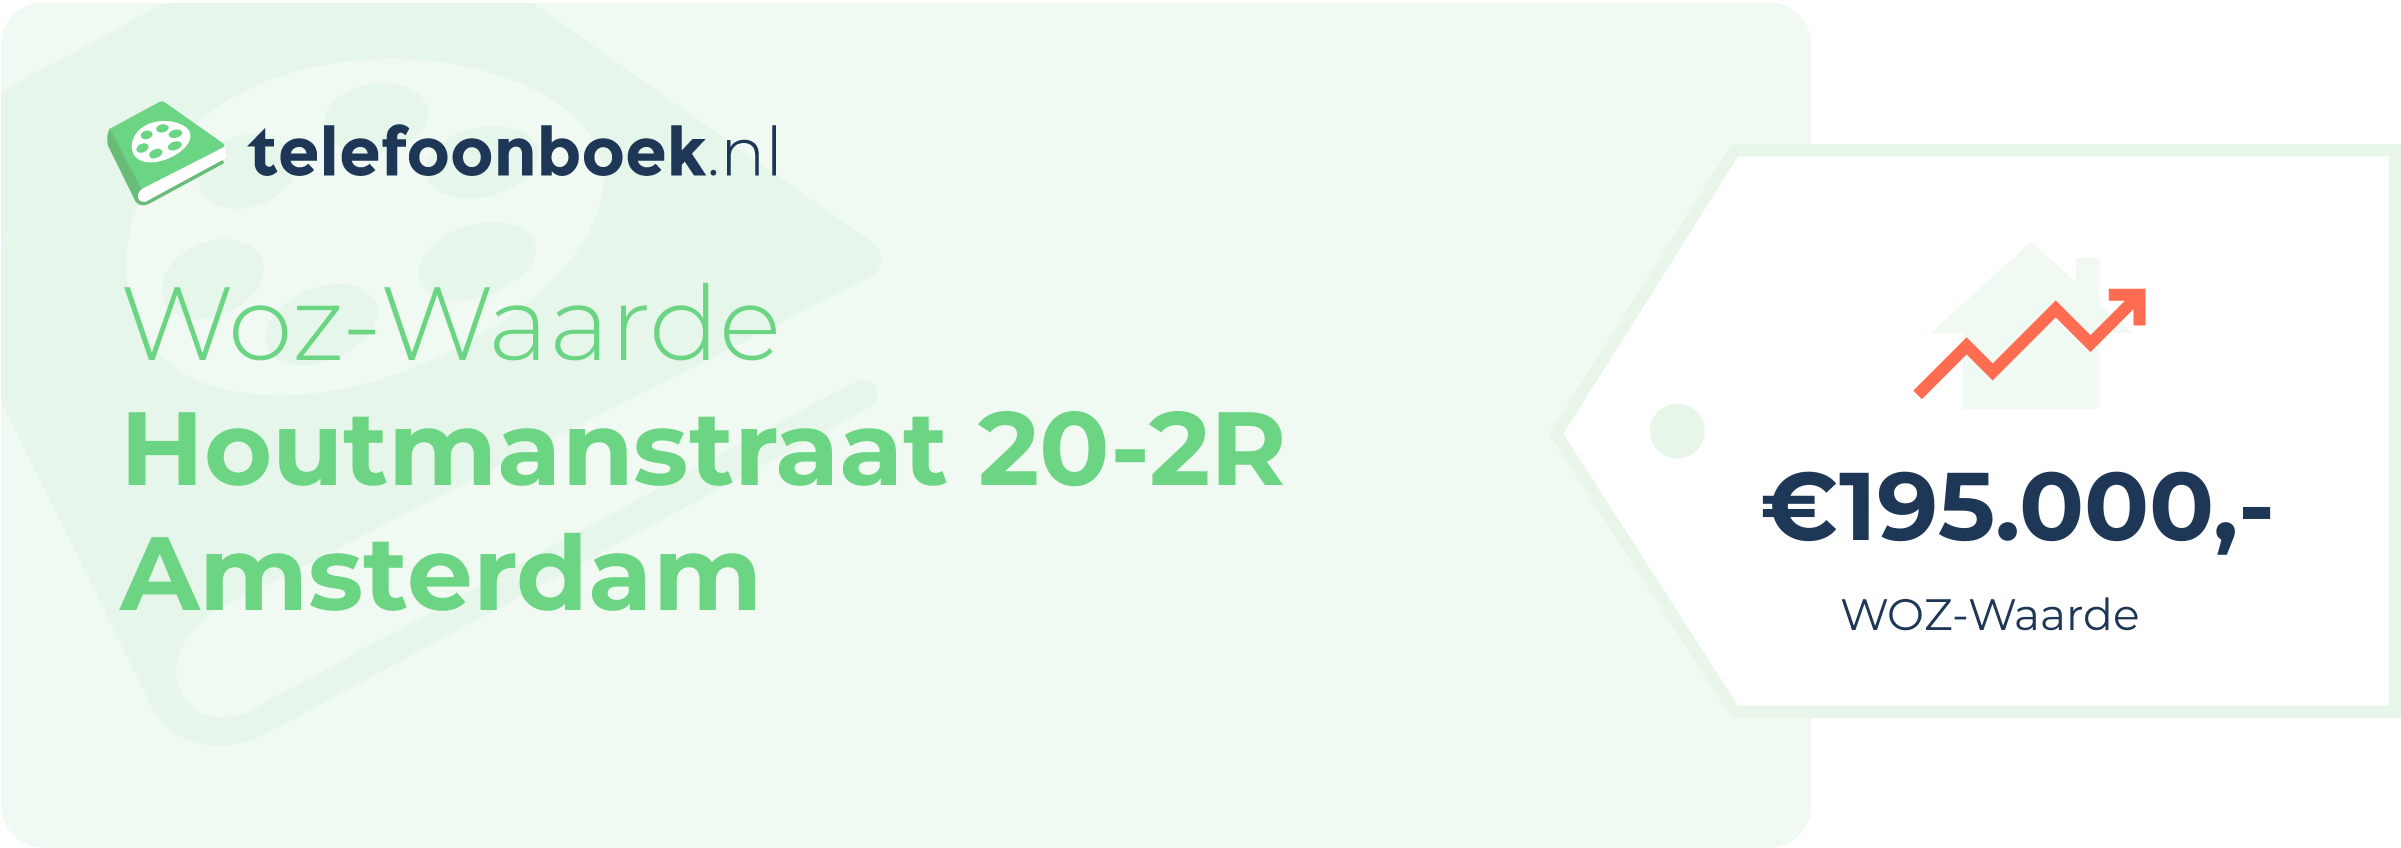 WOZ-waarde Houtmanstraat 20-2R Amsterdam